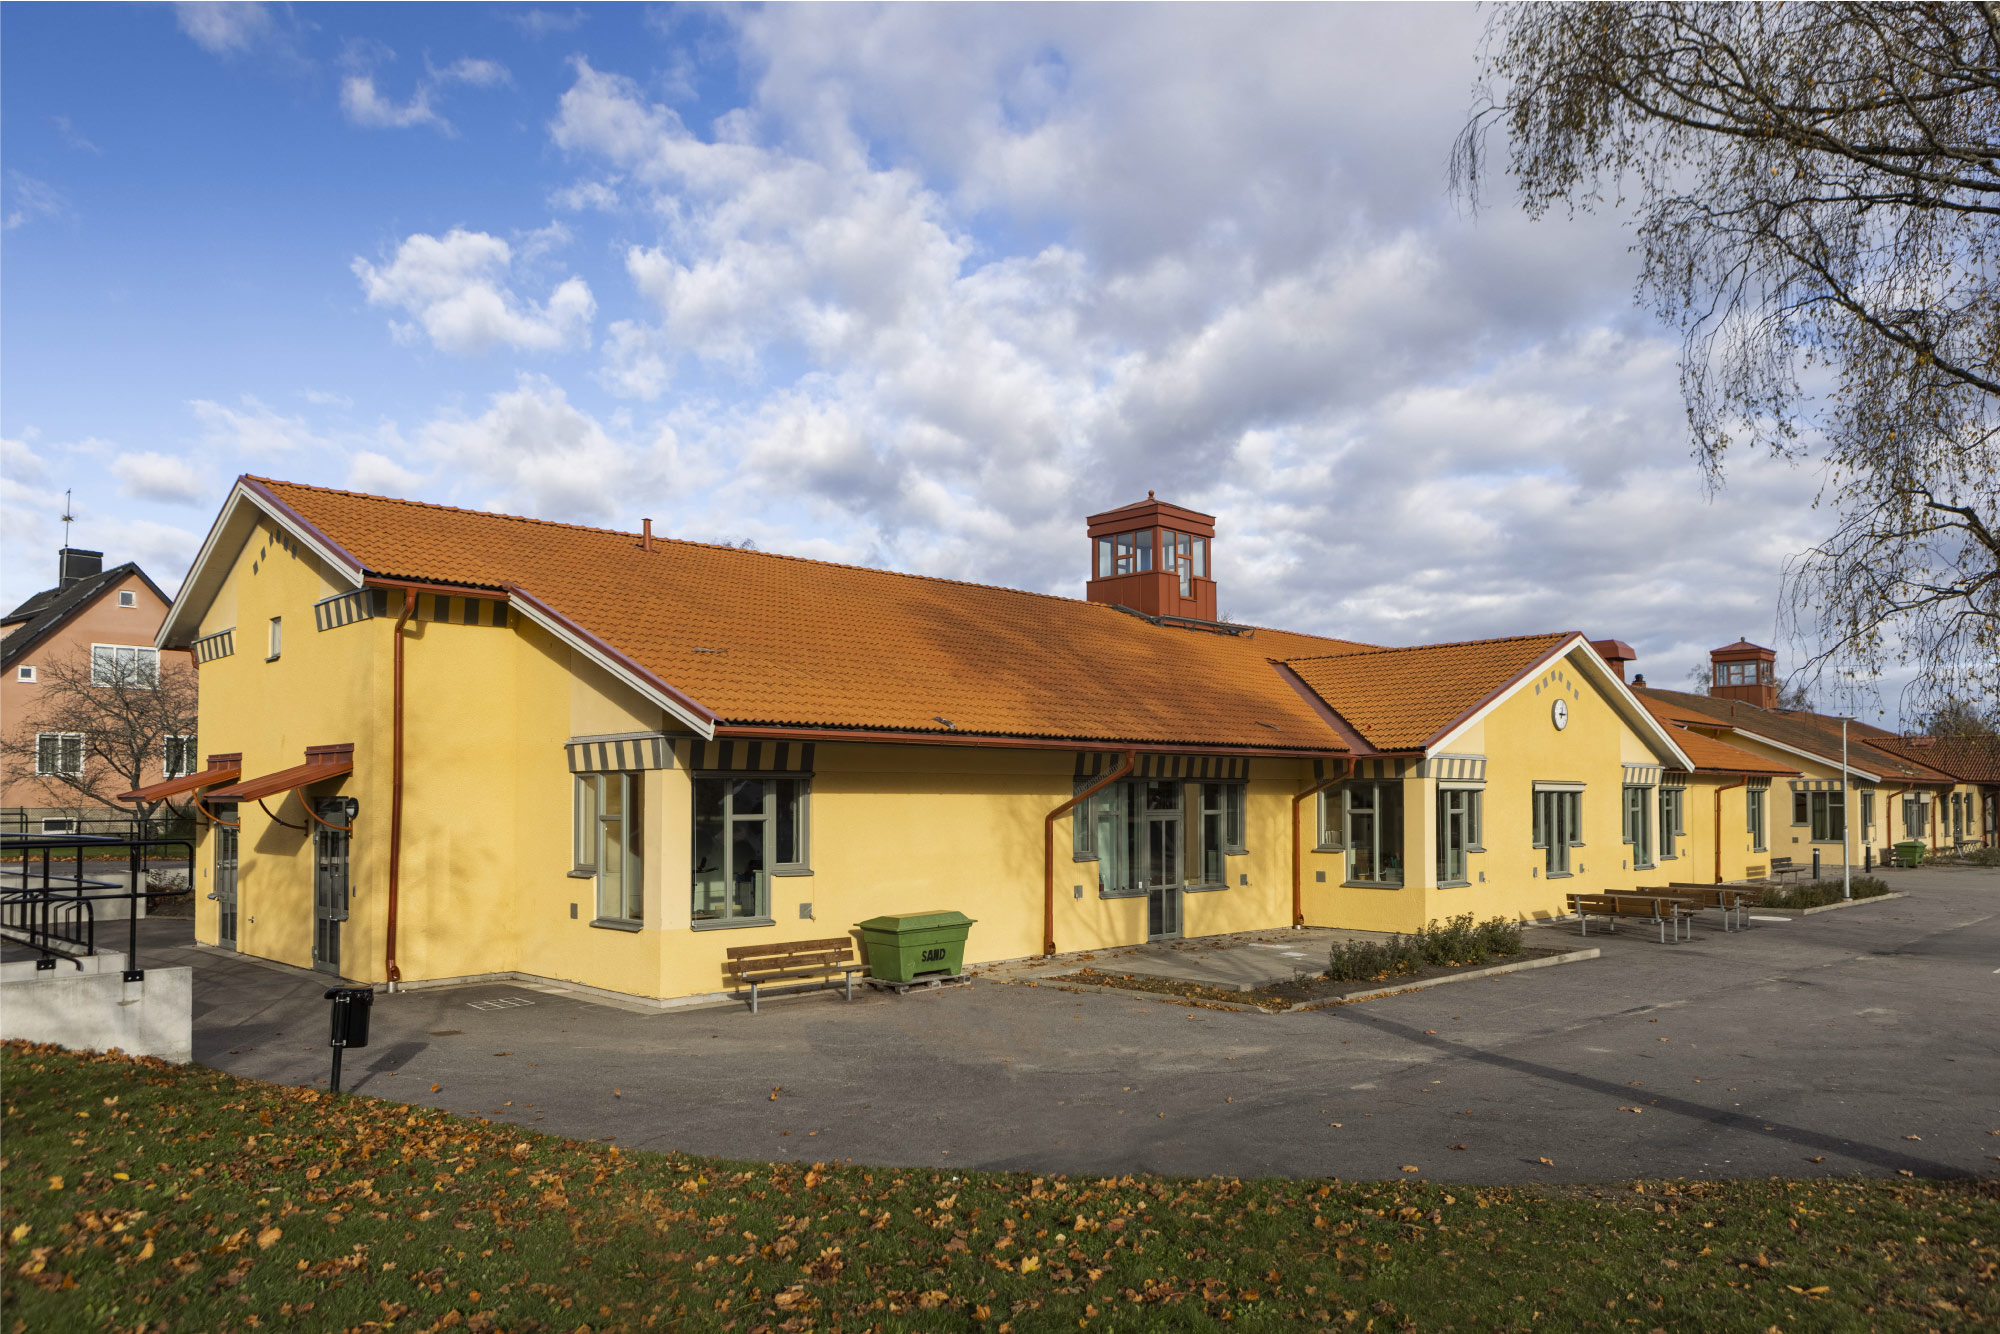 Byggnationen av Stene skola i Kumla – klassisk i form och design men modern inuti